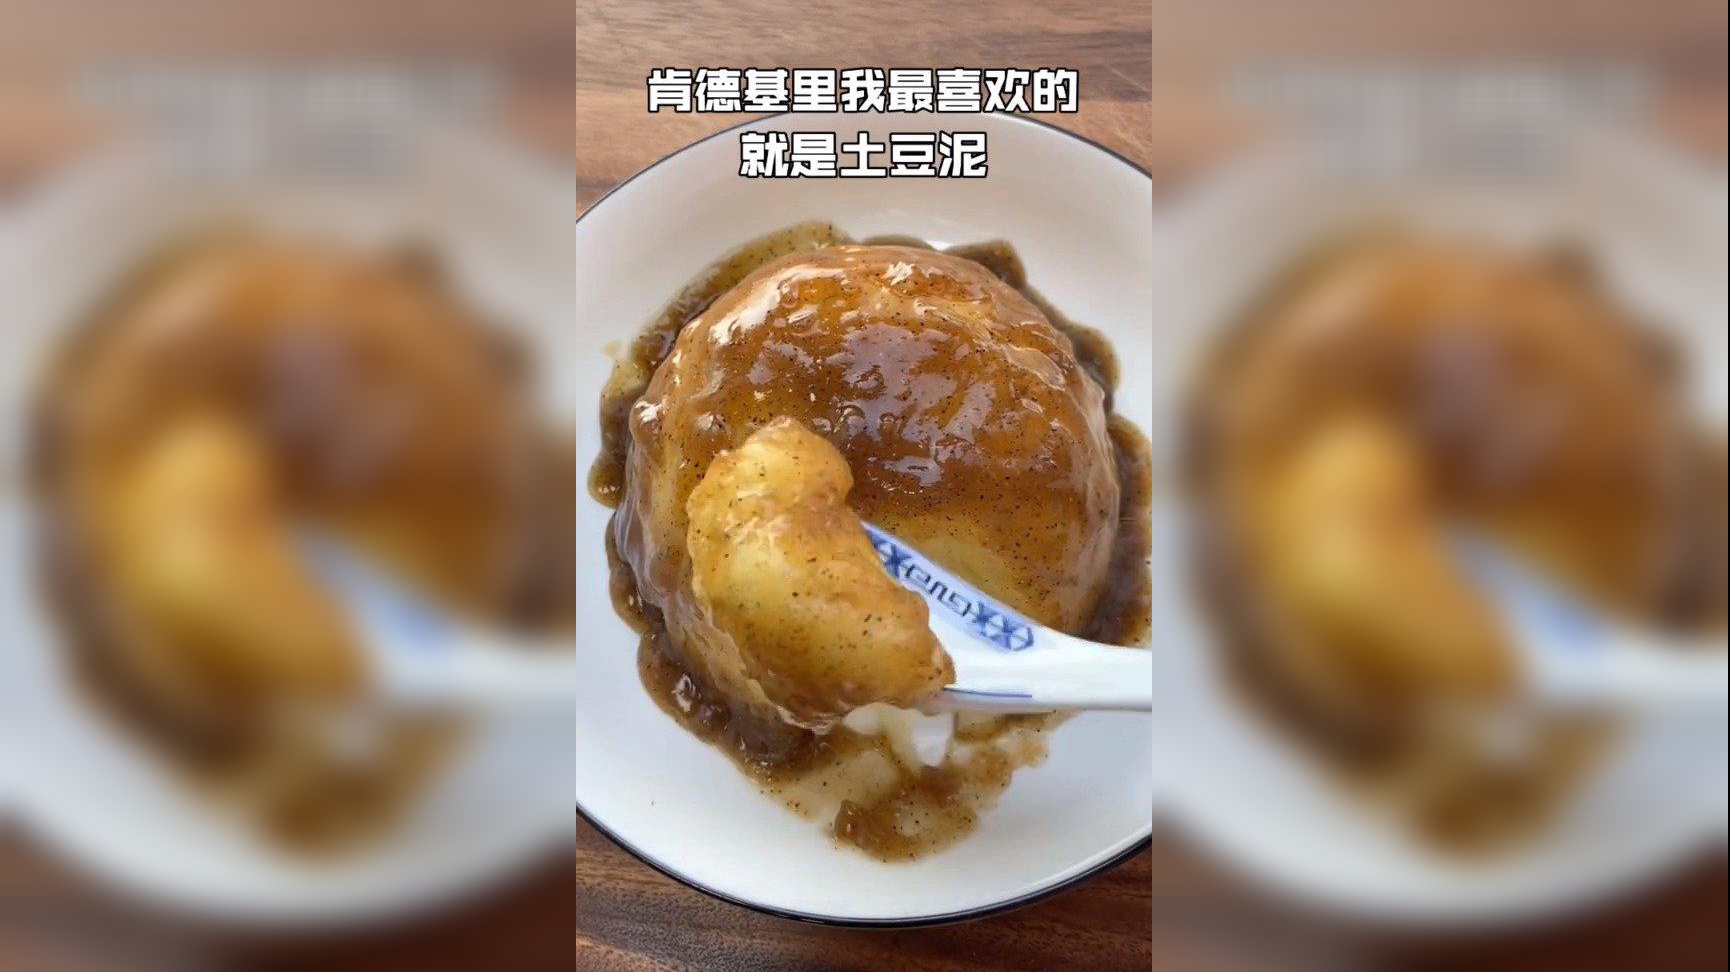 土豆泥app安卓版土豆官网potatoim入口